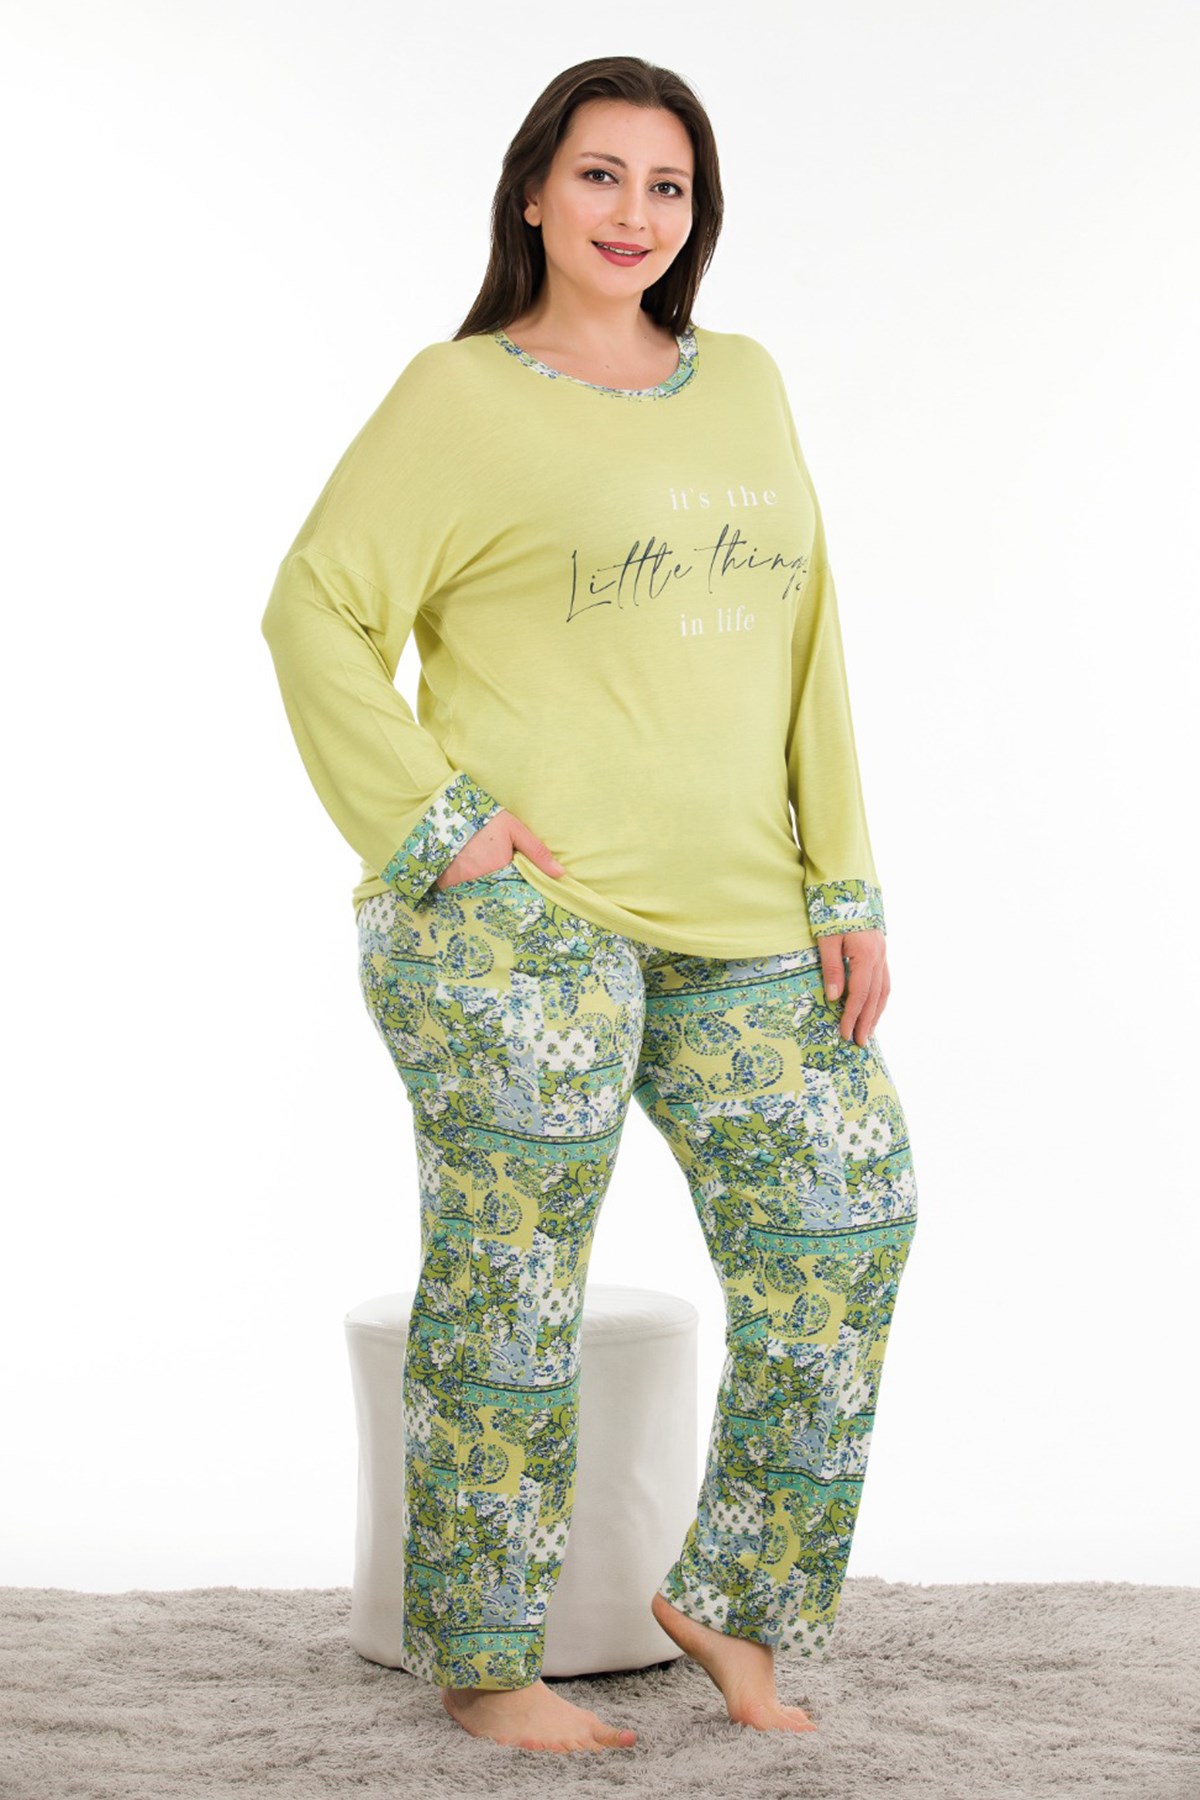 Fıstık Yeşili Renk ve Desenli Lady 11362 Kadın Uzun Kol Büyük Beden Pijama Takımı